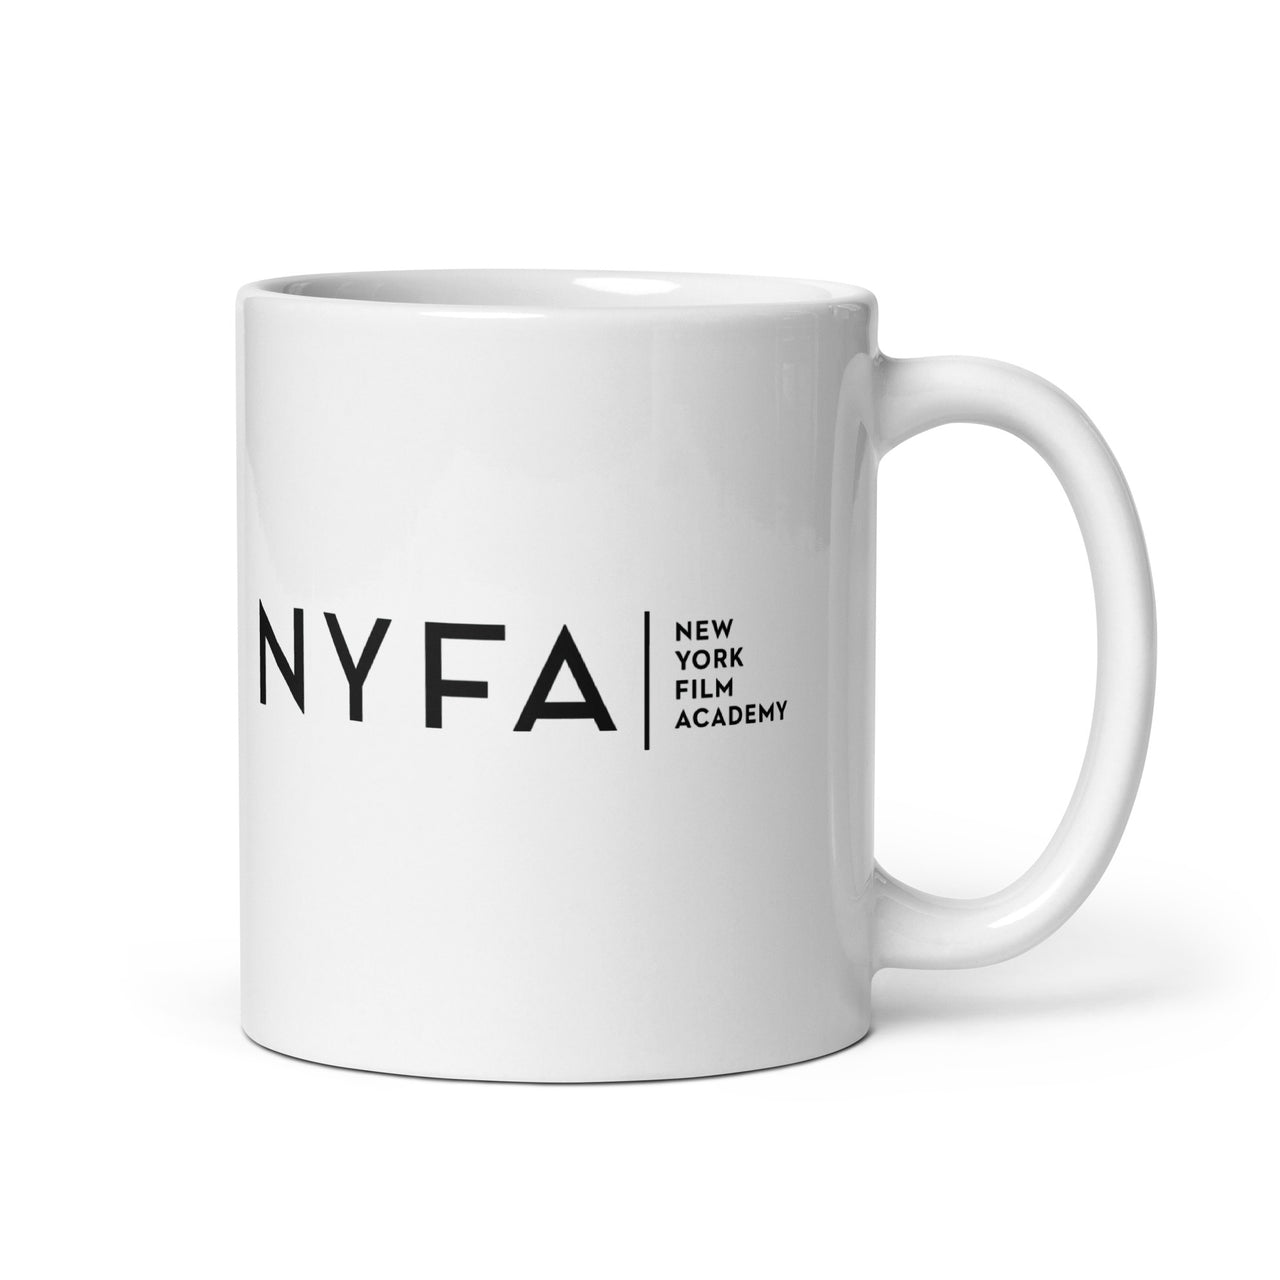 NYFA Mug - White